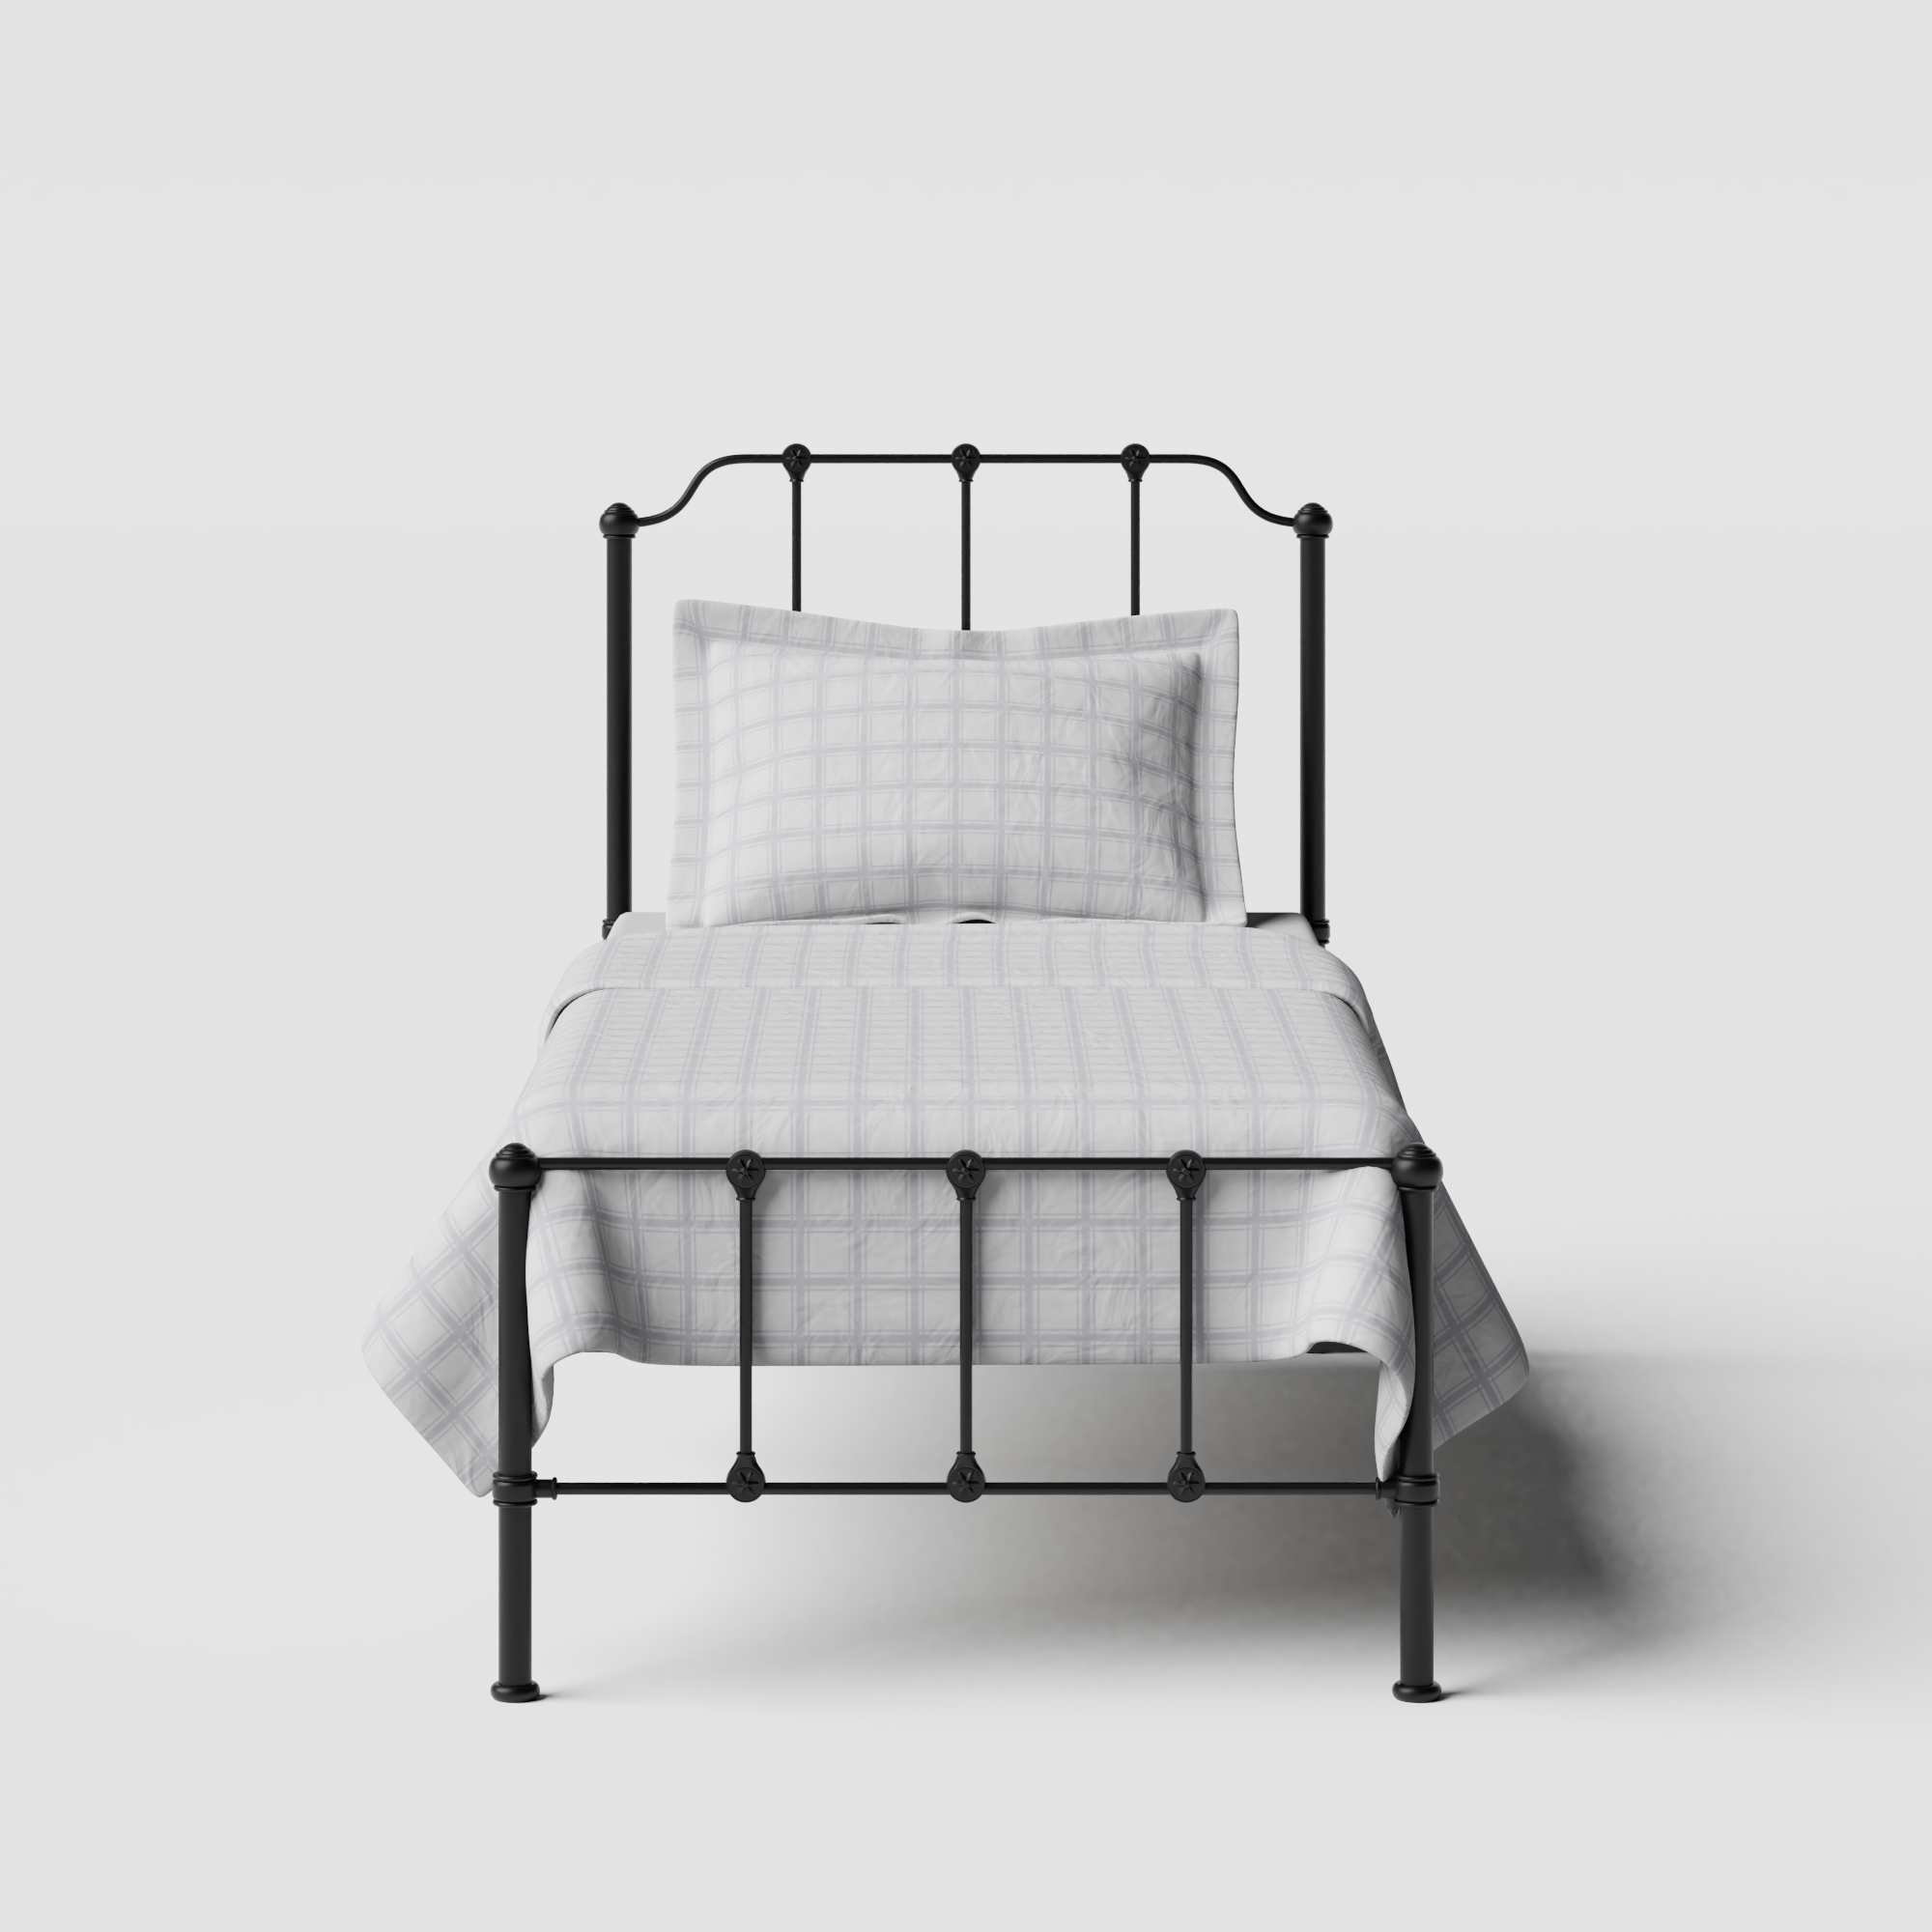 Julia iron/metal single bed in black